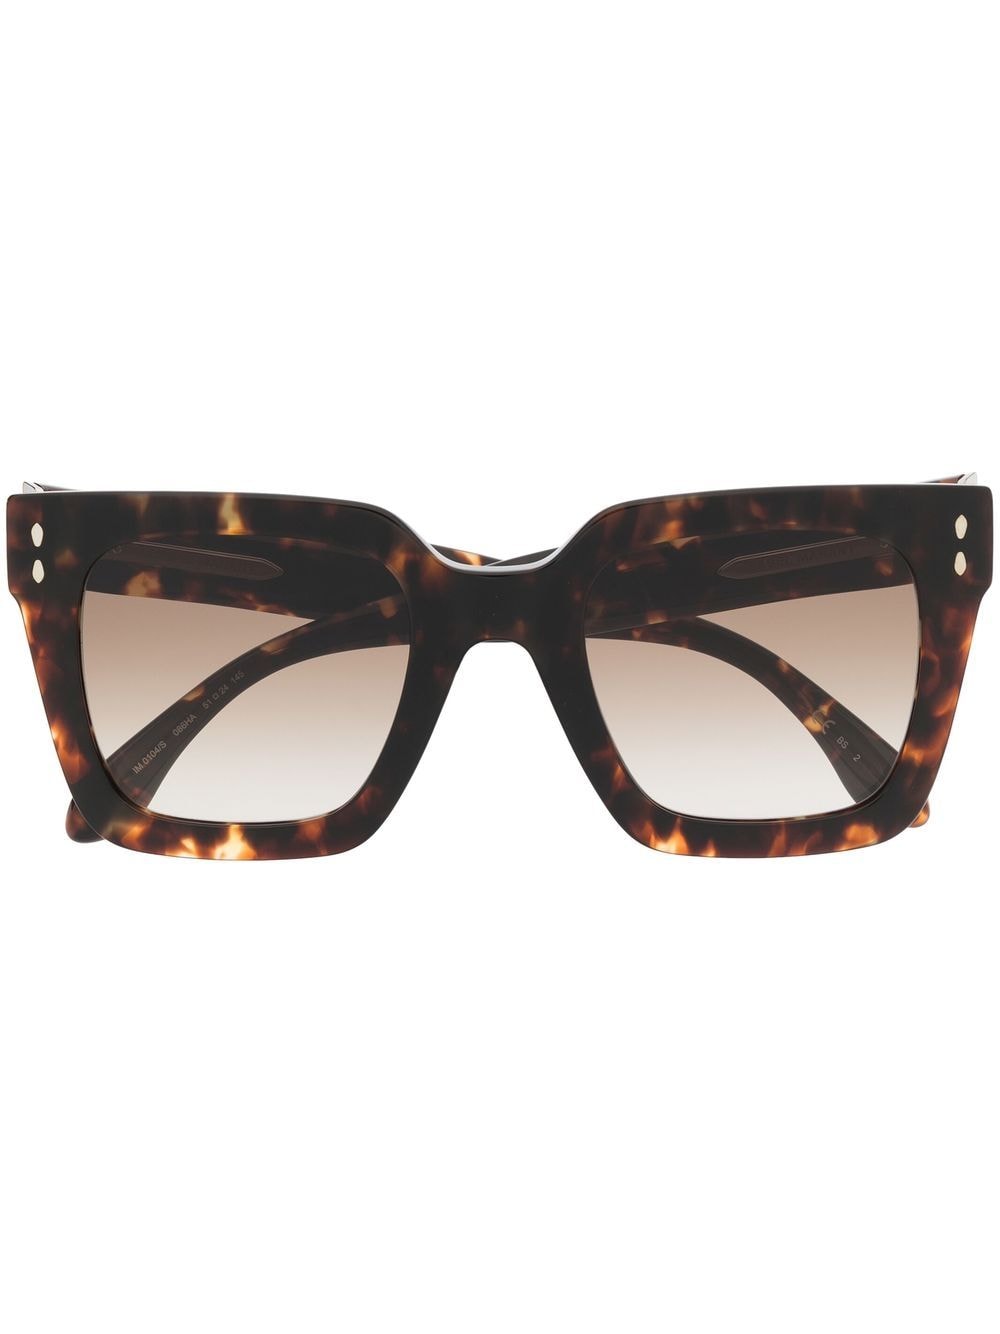 Isabel Marant Eyewear tortoiseshell square frame oversized sunglasses - Brown von Isabel Marant Eyewear